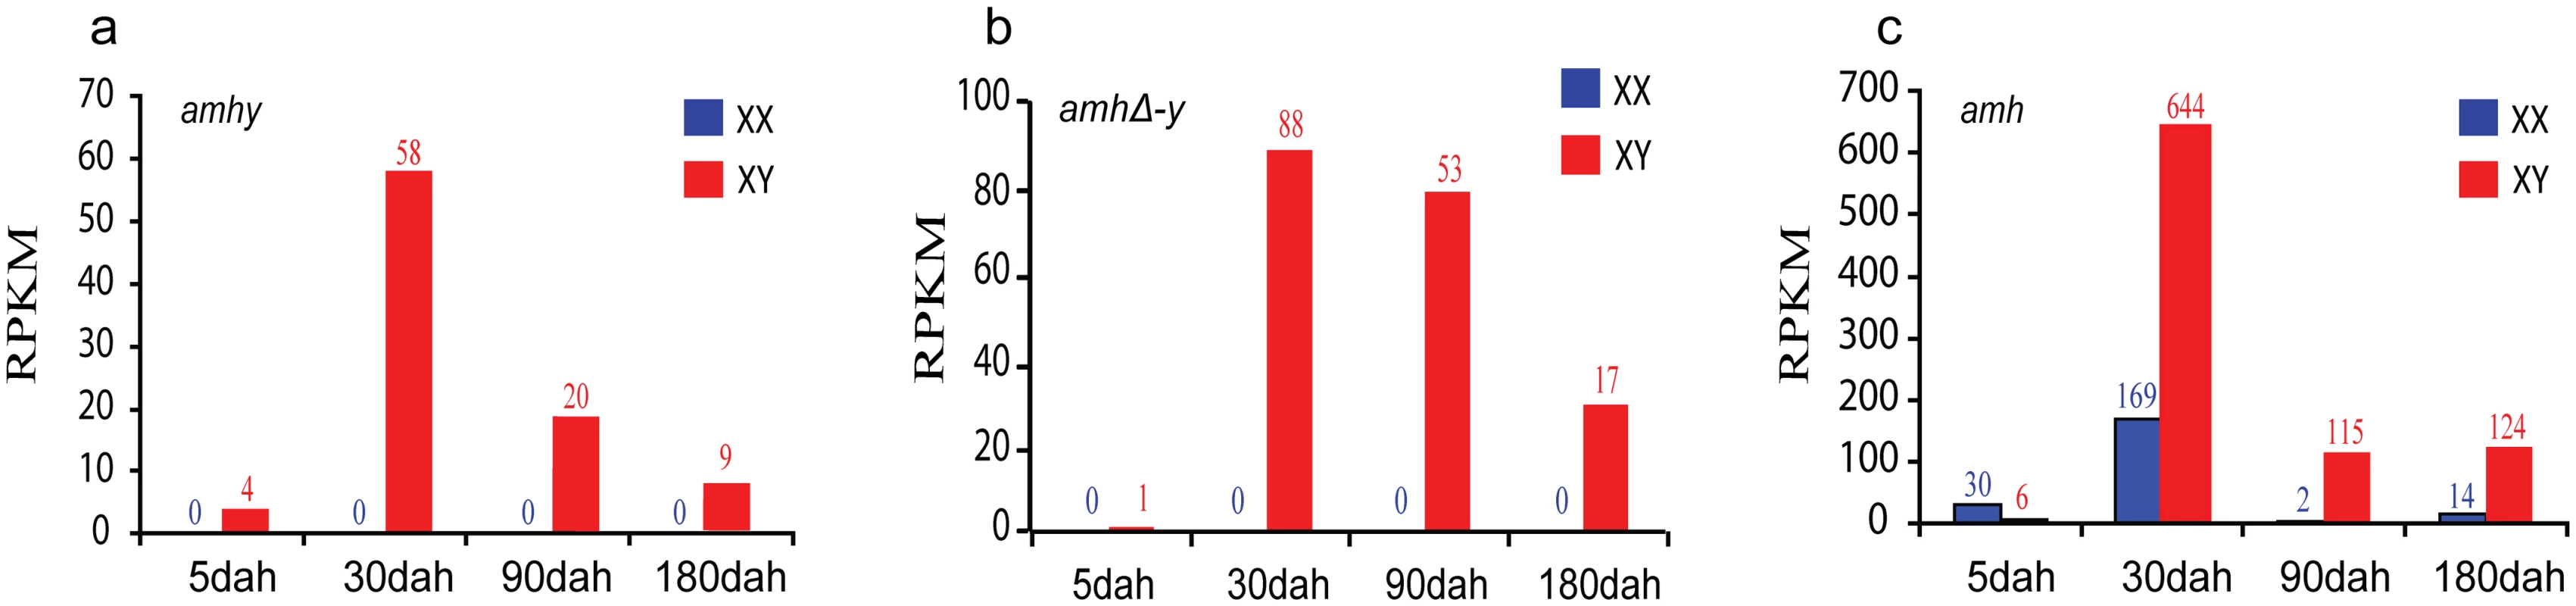 Expression profiles of <i>amhy</i>, <i>amhΔ-y</i> and <i>amh</i> by transcriptome analysis.